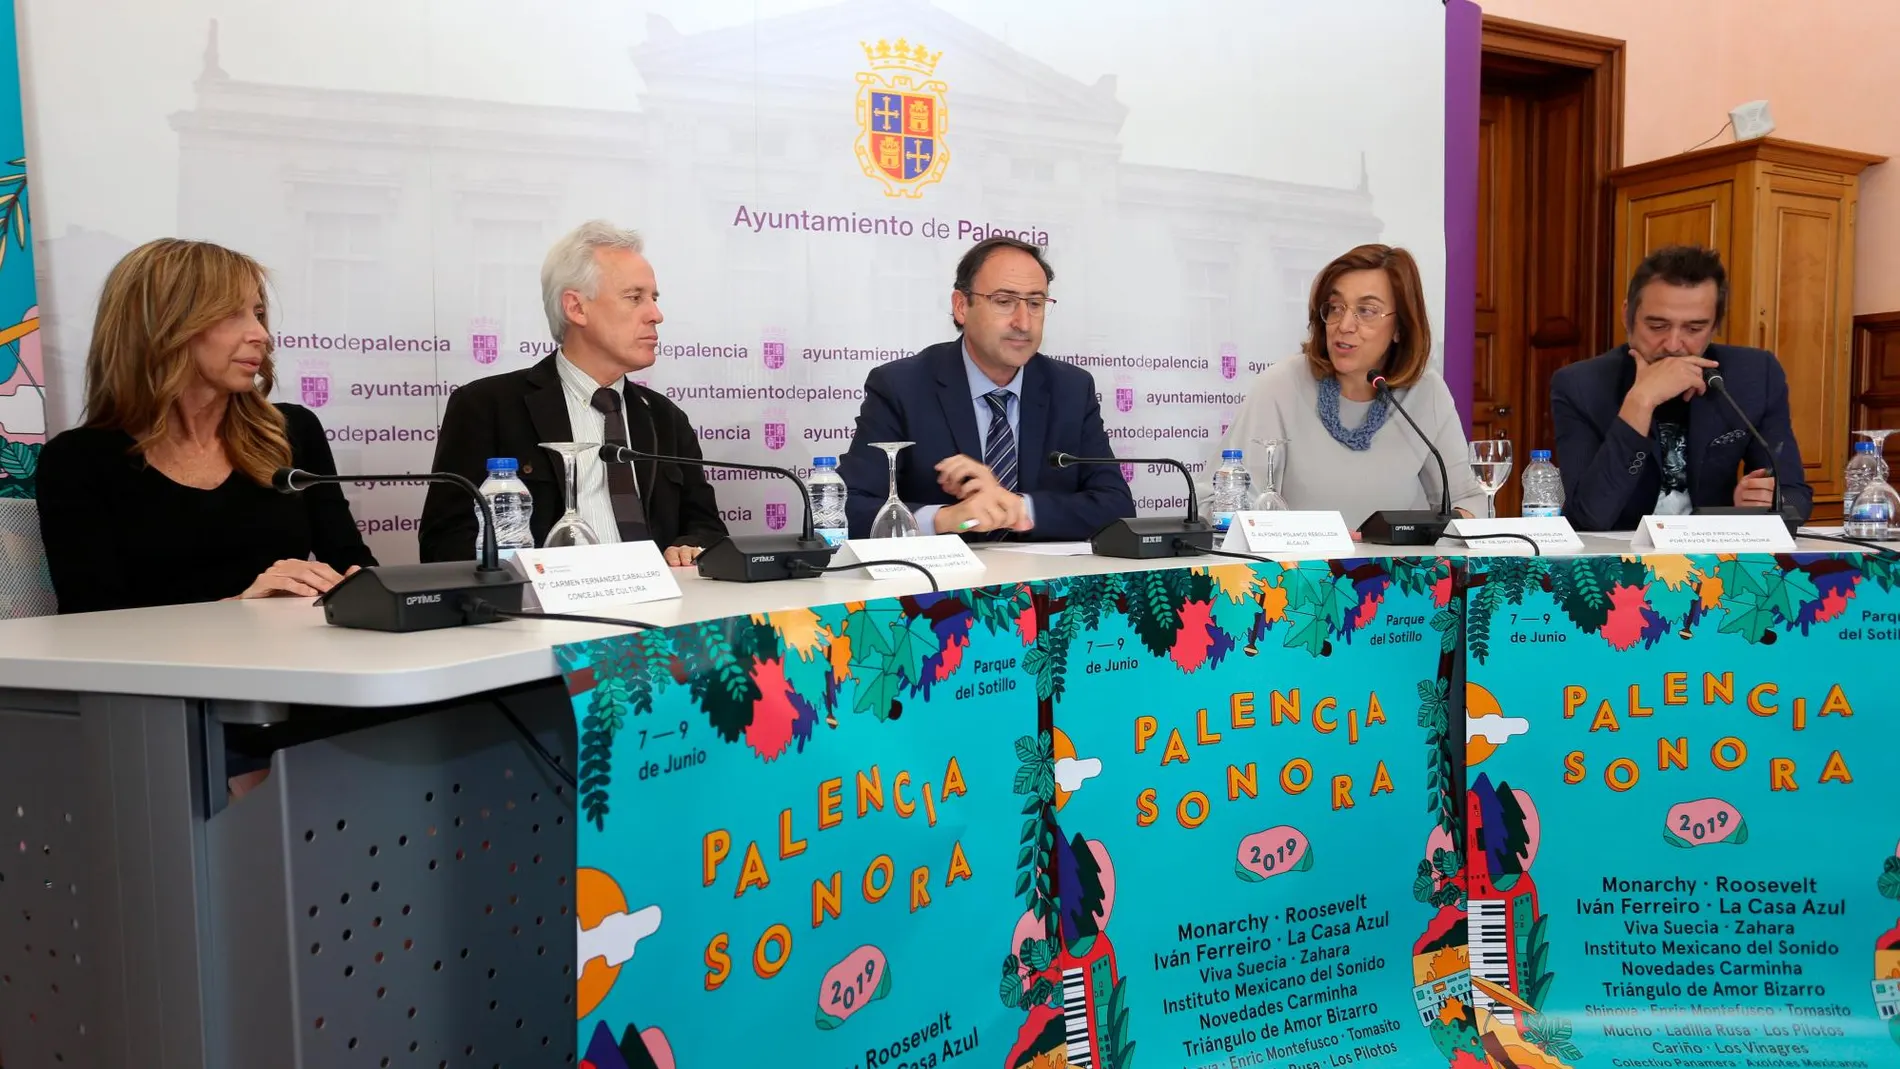 Alfonso Polanco, Ángeles Armisén, Luis Domingo González y representantes de la organización de Palencia Sonora 2019, presentan las últimas novedades